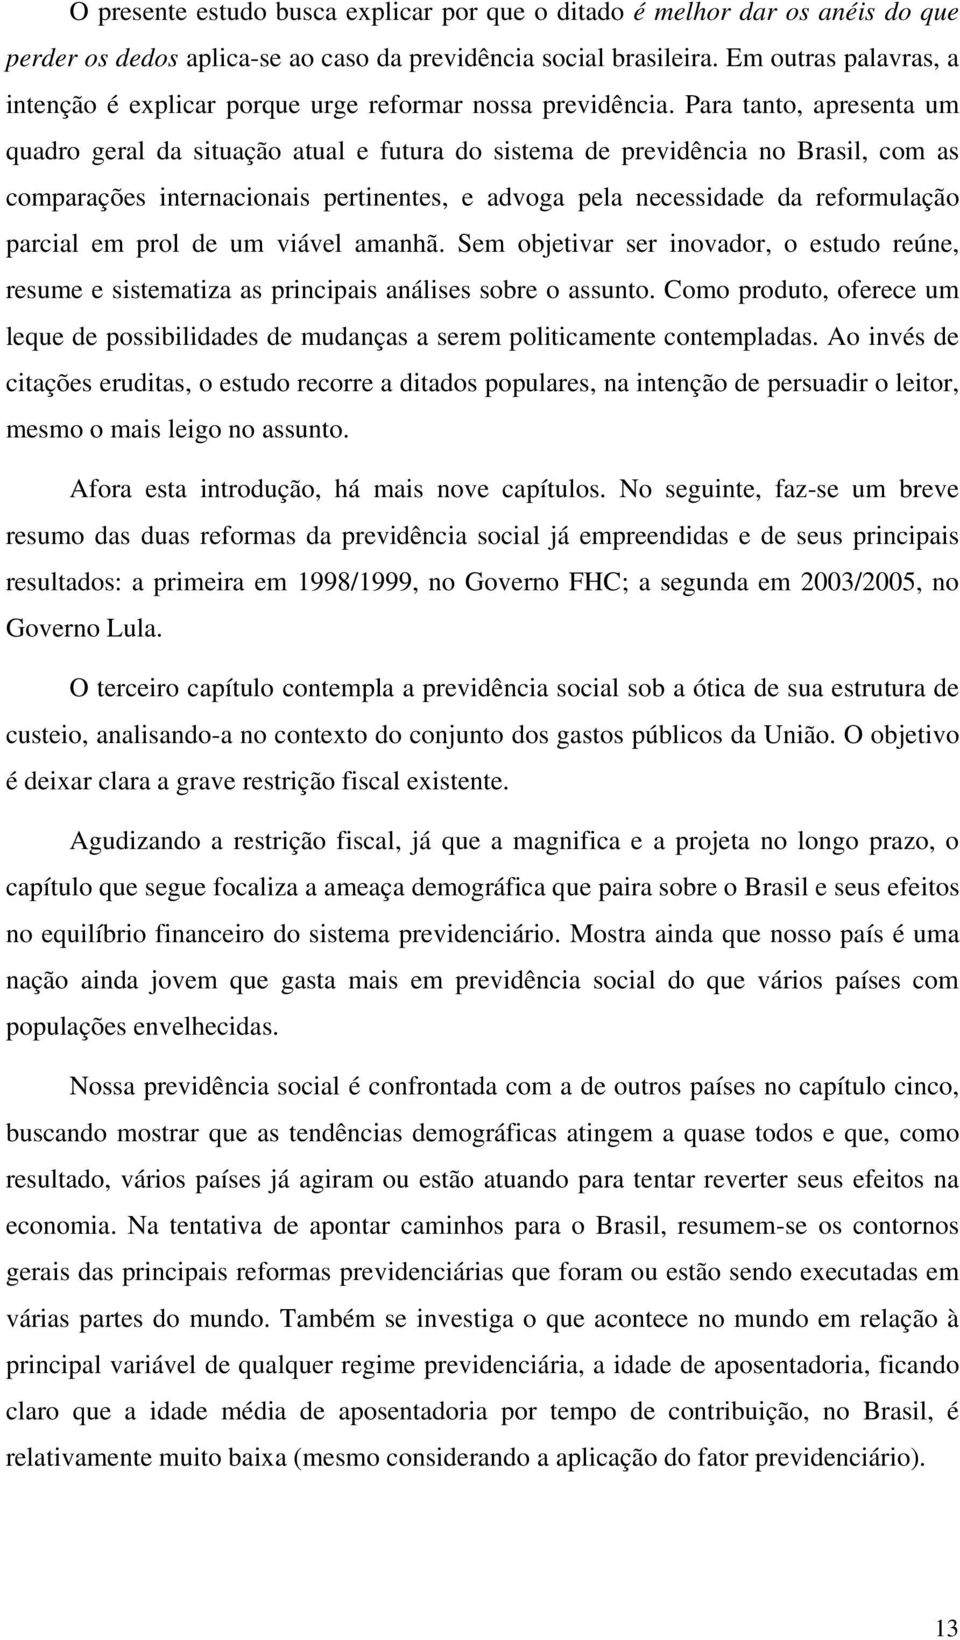 Para tanto, apresenta um quadro geral da situação atual e futura do sistema de previdência no Brasil, com as comparações internacionais pertinentes, e advoga pela necessidade da reformulação parcial